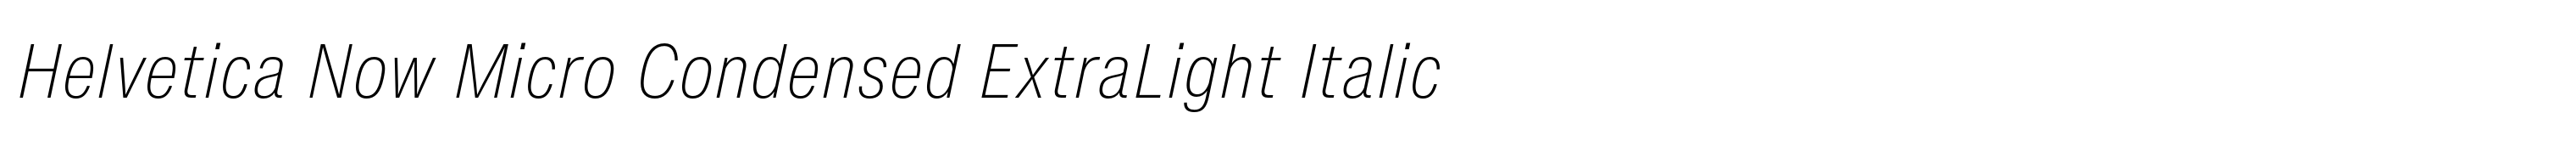 Helvetica Now Micro Condensed ExtraLight Italic